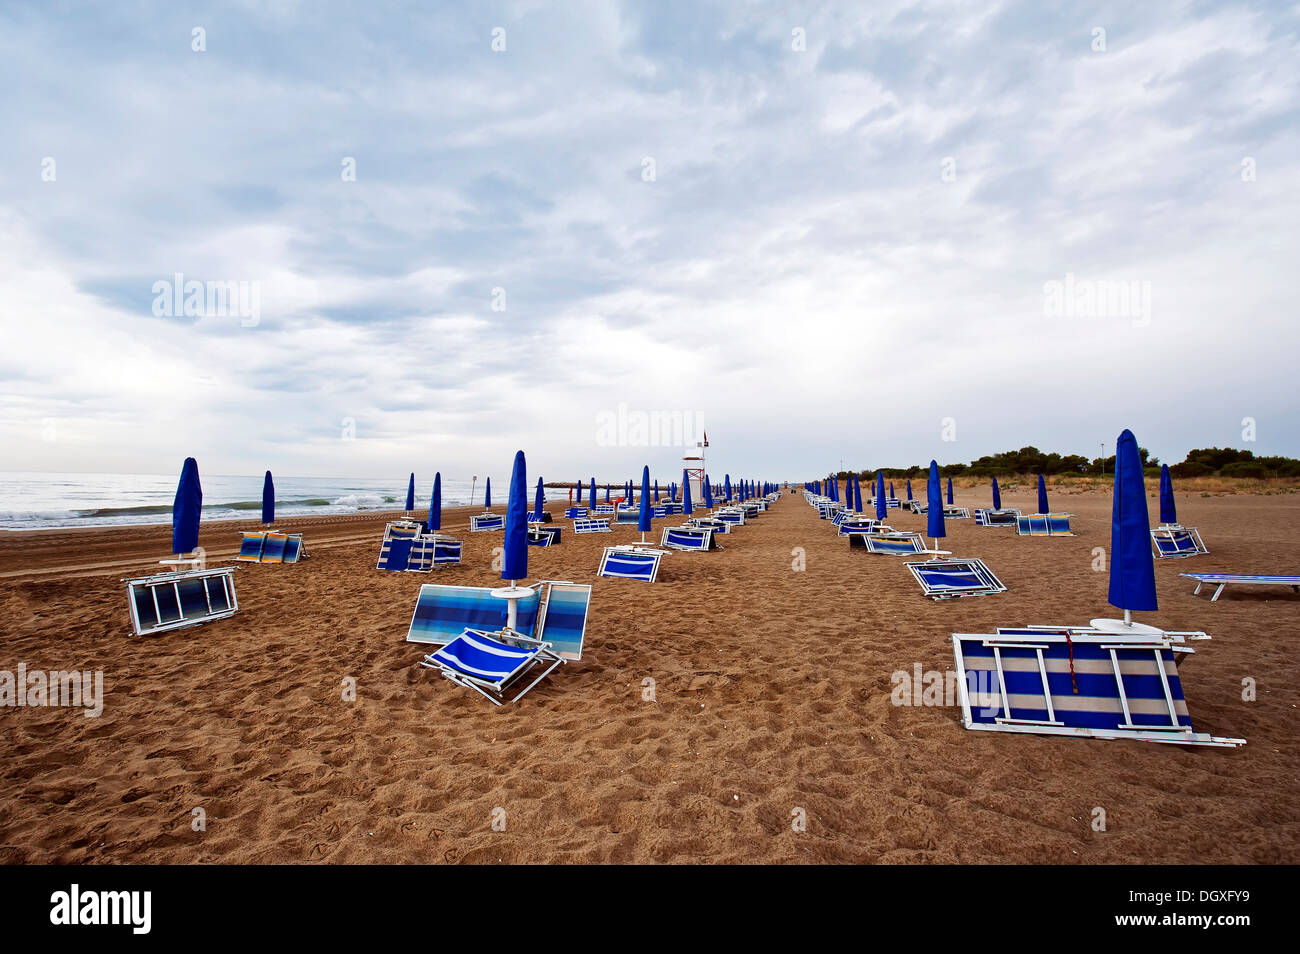 Gefaltet, Liegestühle und Sonnenschirme am Strand am Meer mit Regenwolken, Cavallino, Jesolo, Venedig, Italien Stockfoto